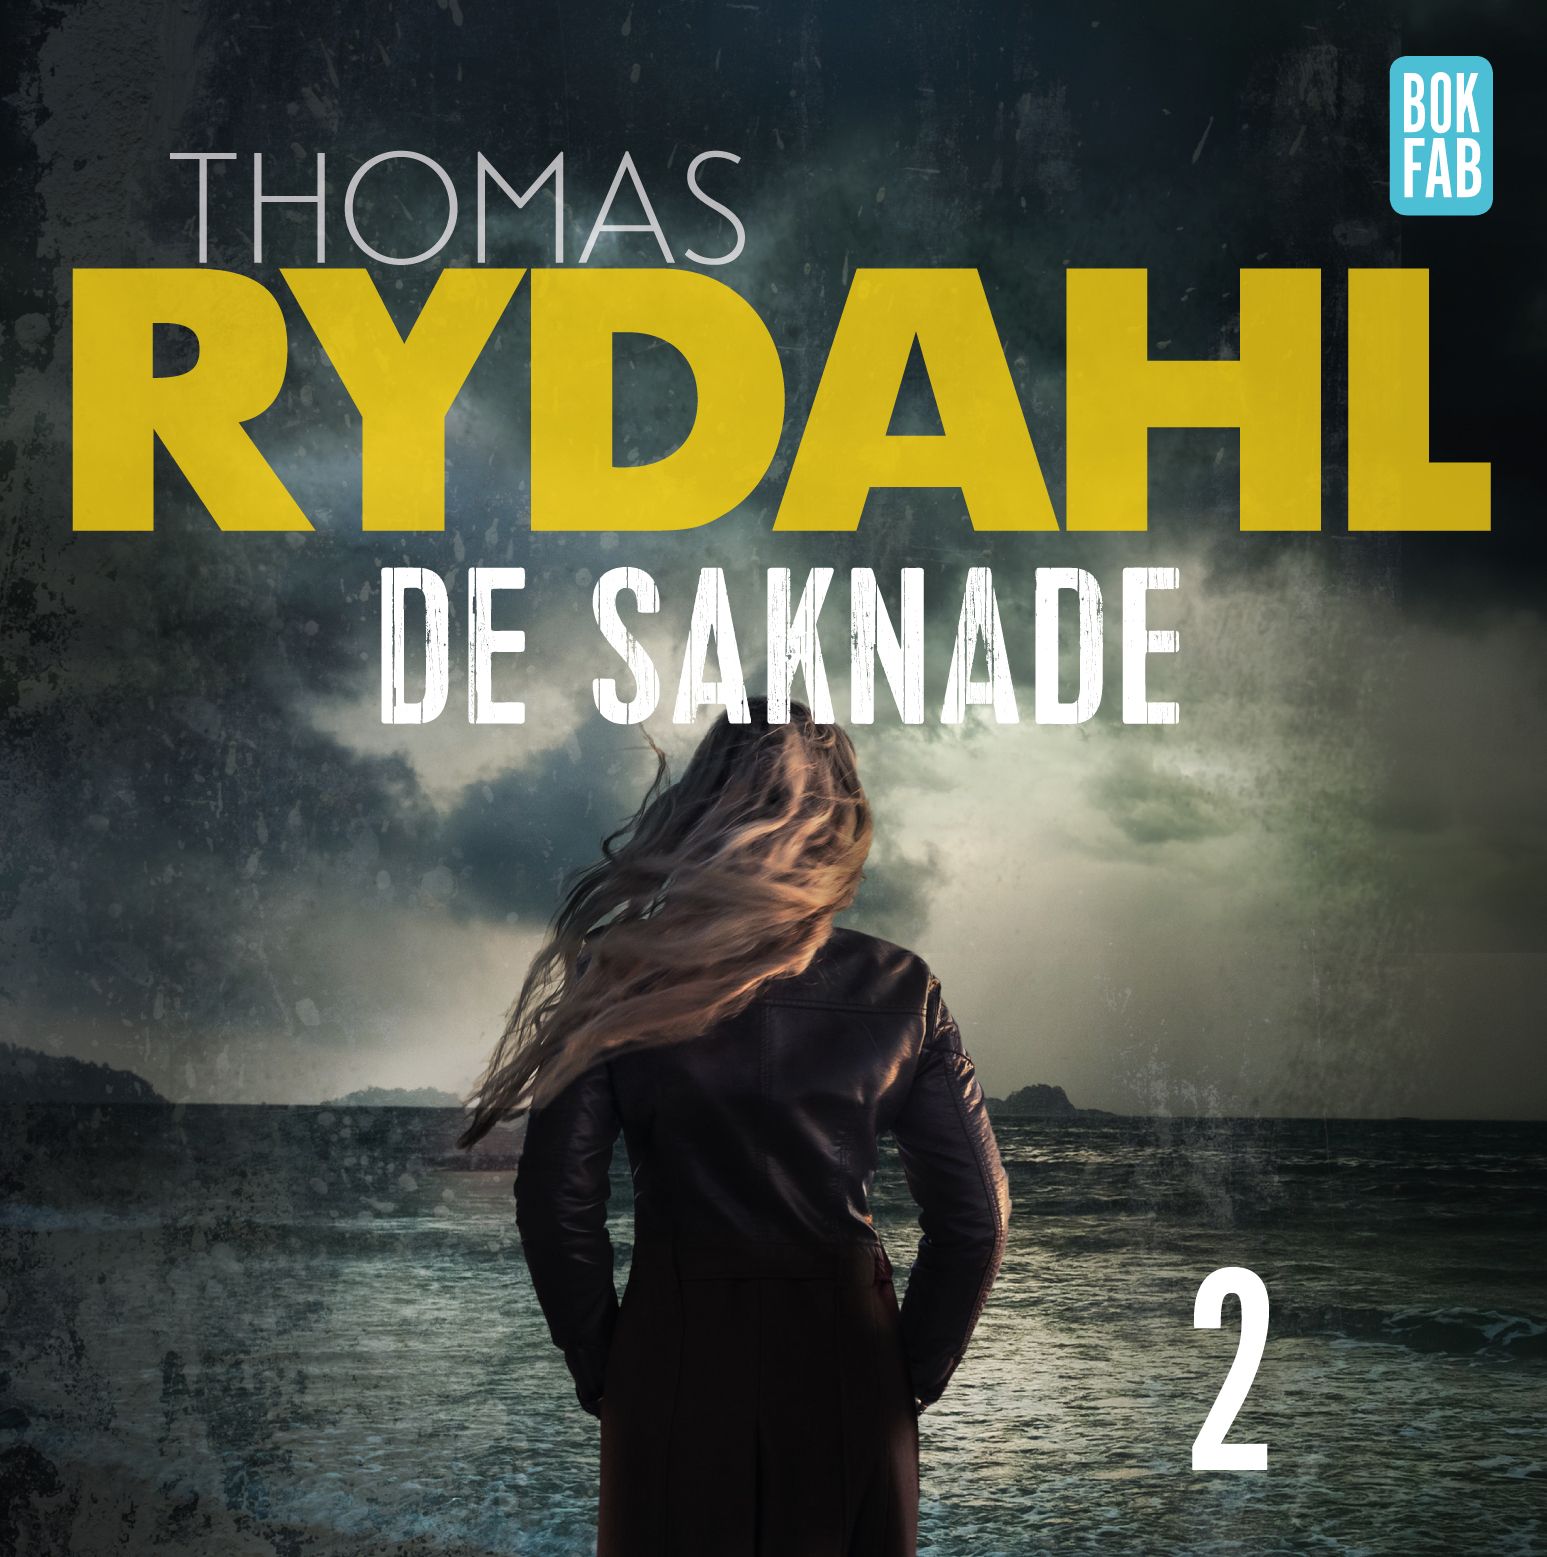 De saknade Del 2, audiobook by Thomas Rydahl